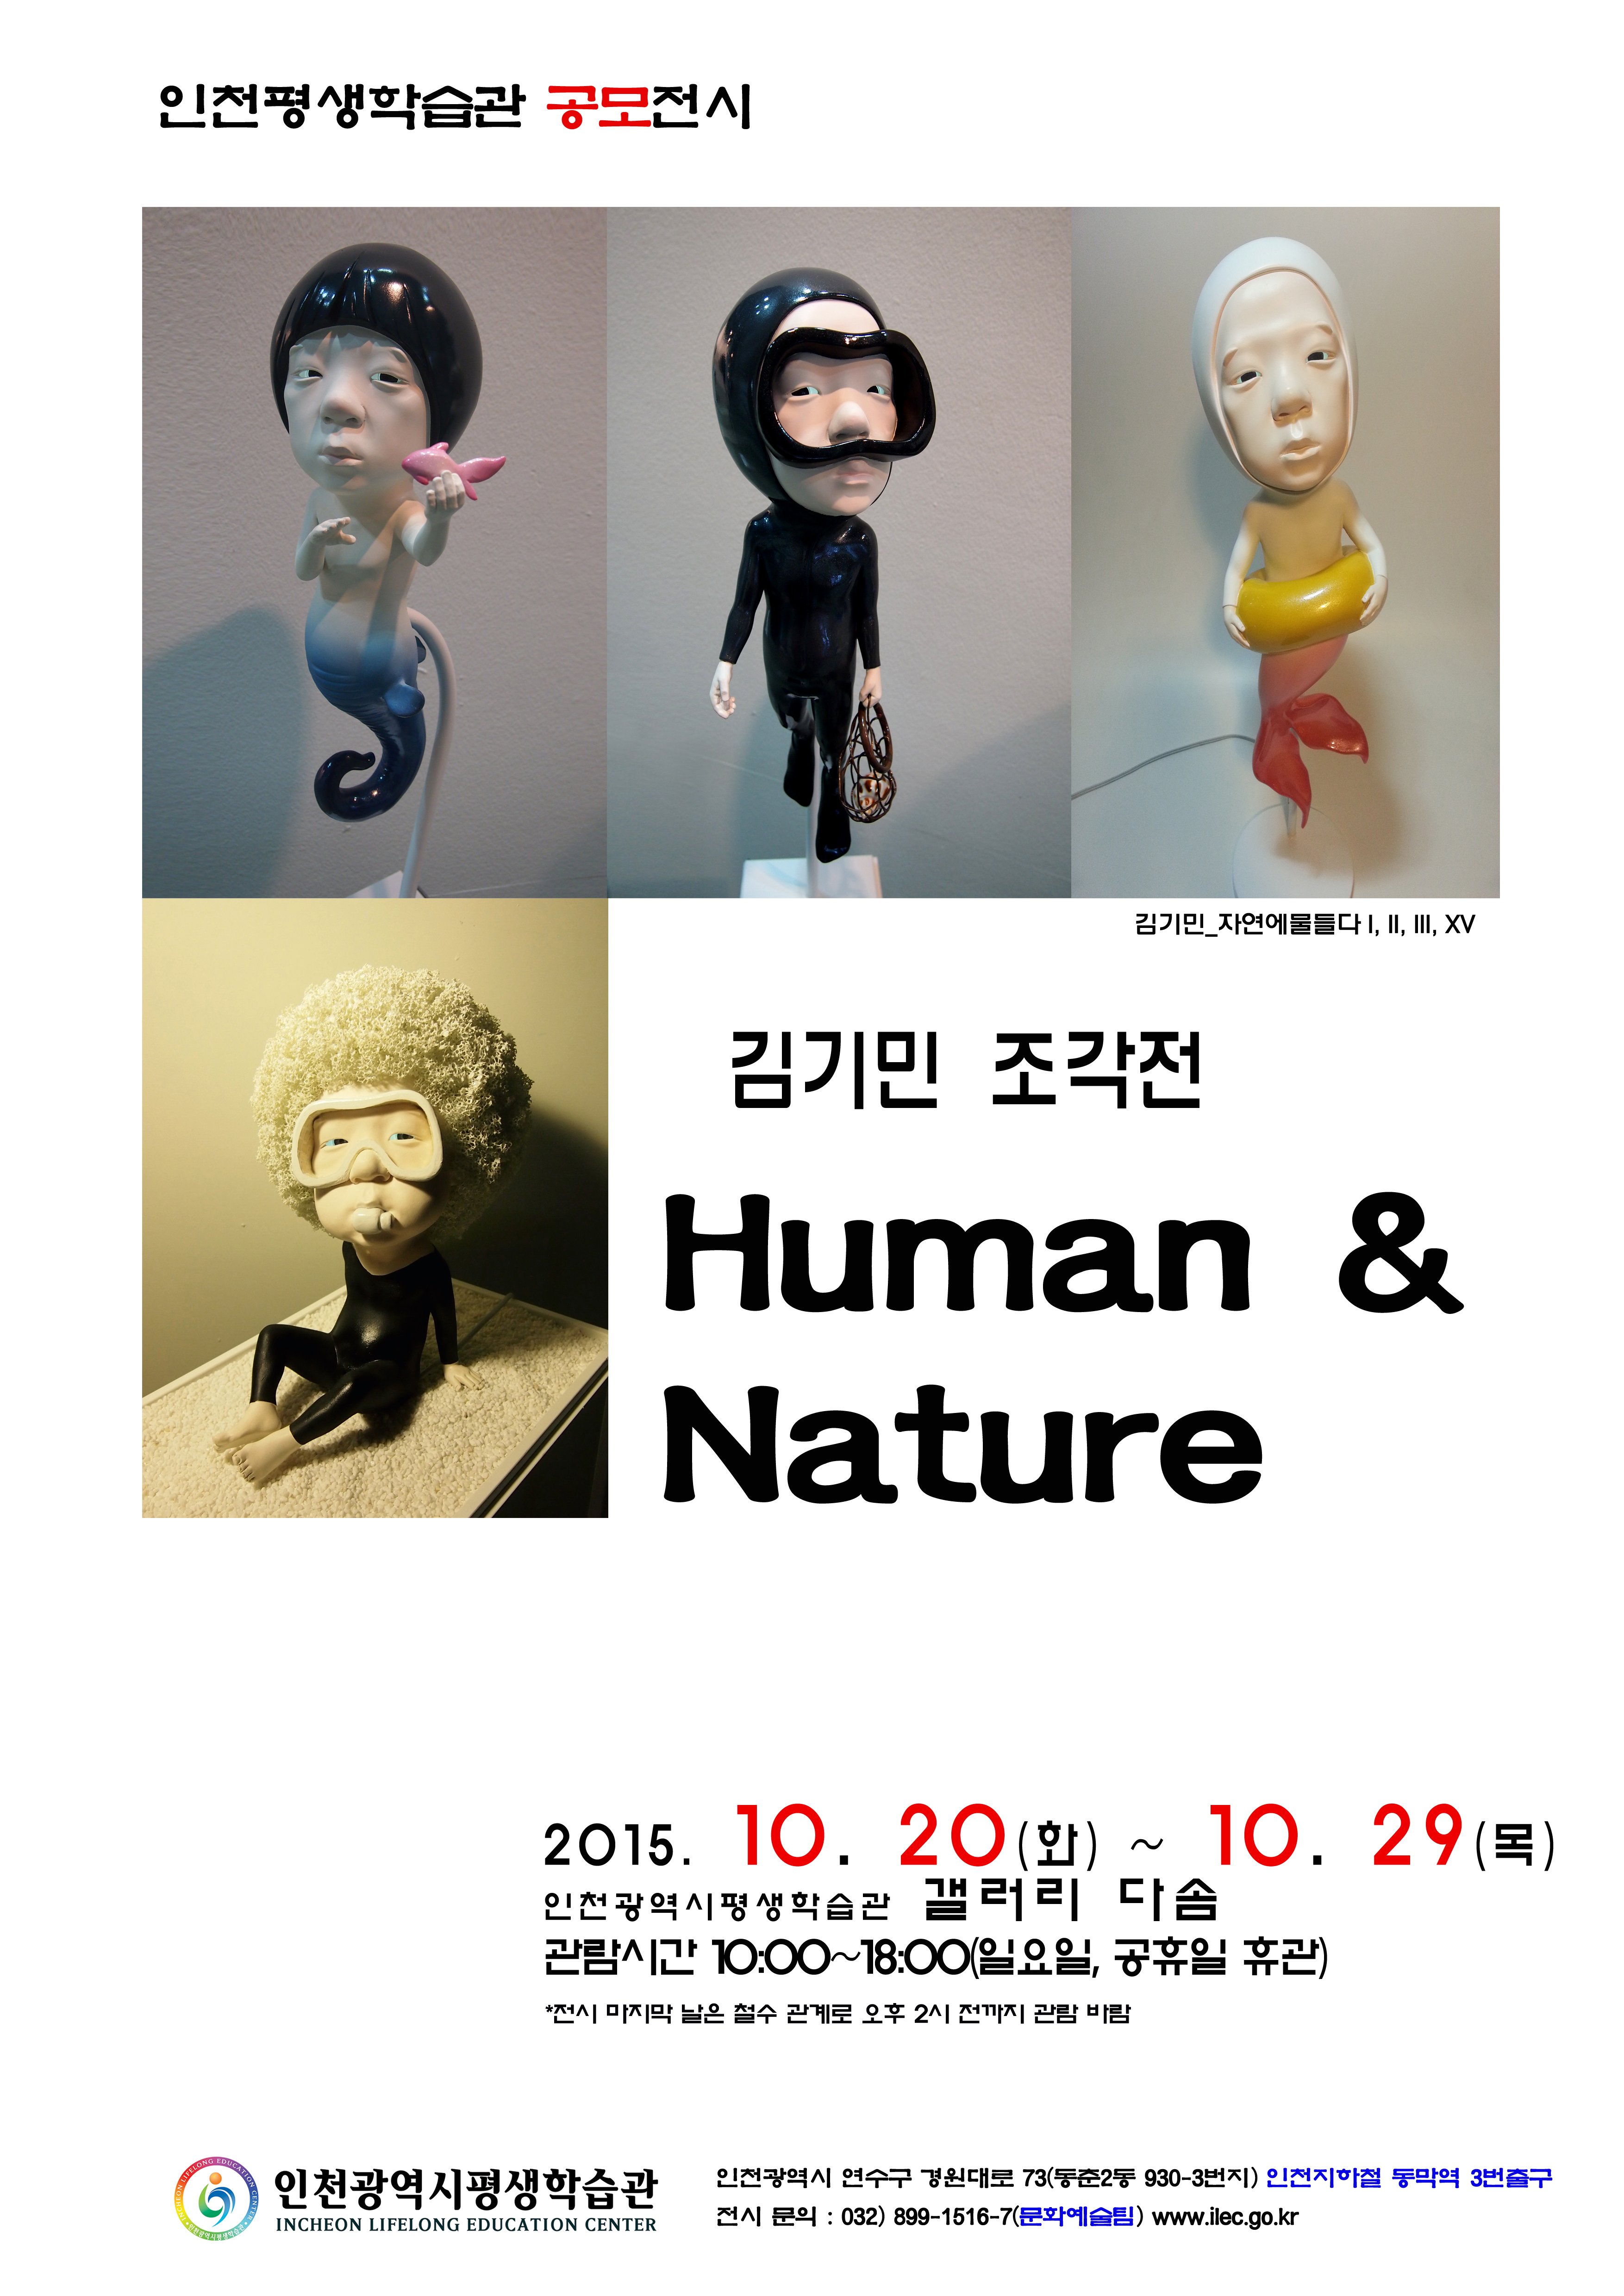 [2015 공모전시] 김기민, Human & Nature 관련 포스터 - 자세한 내용은 본문참조